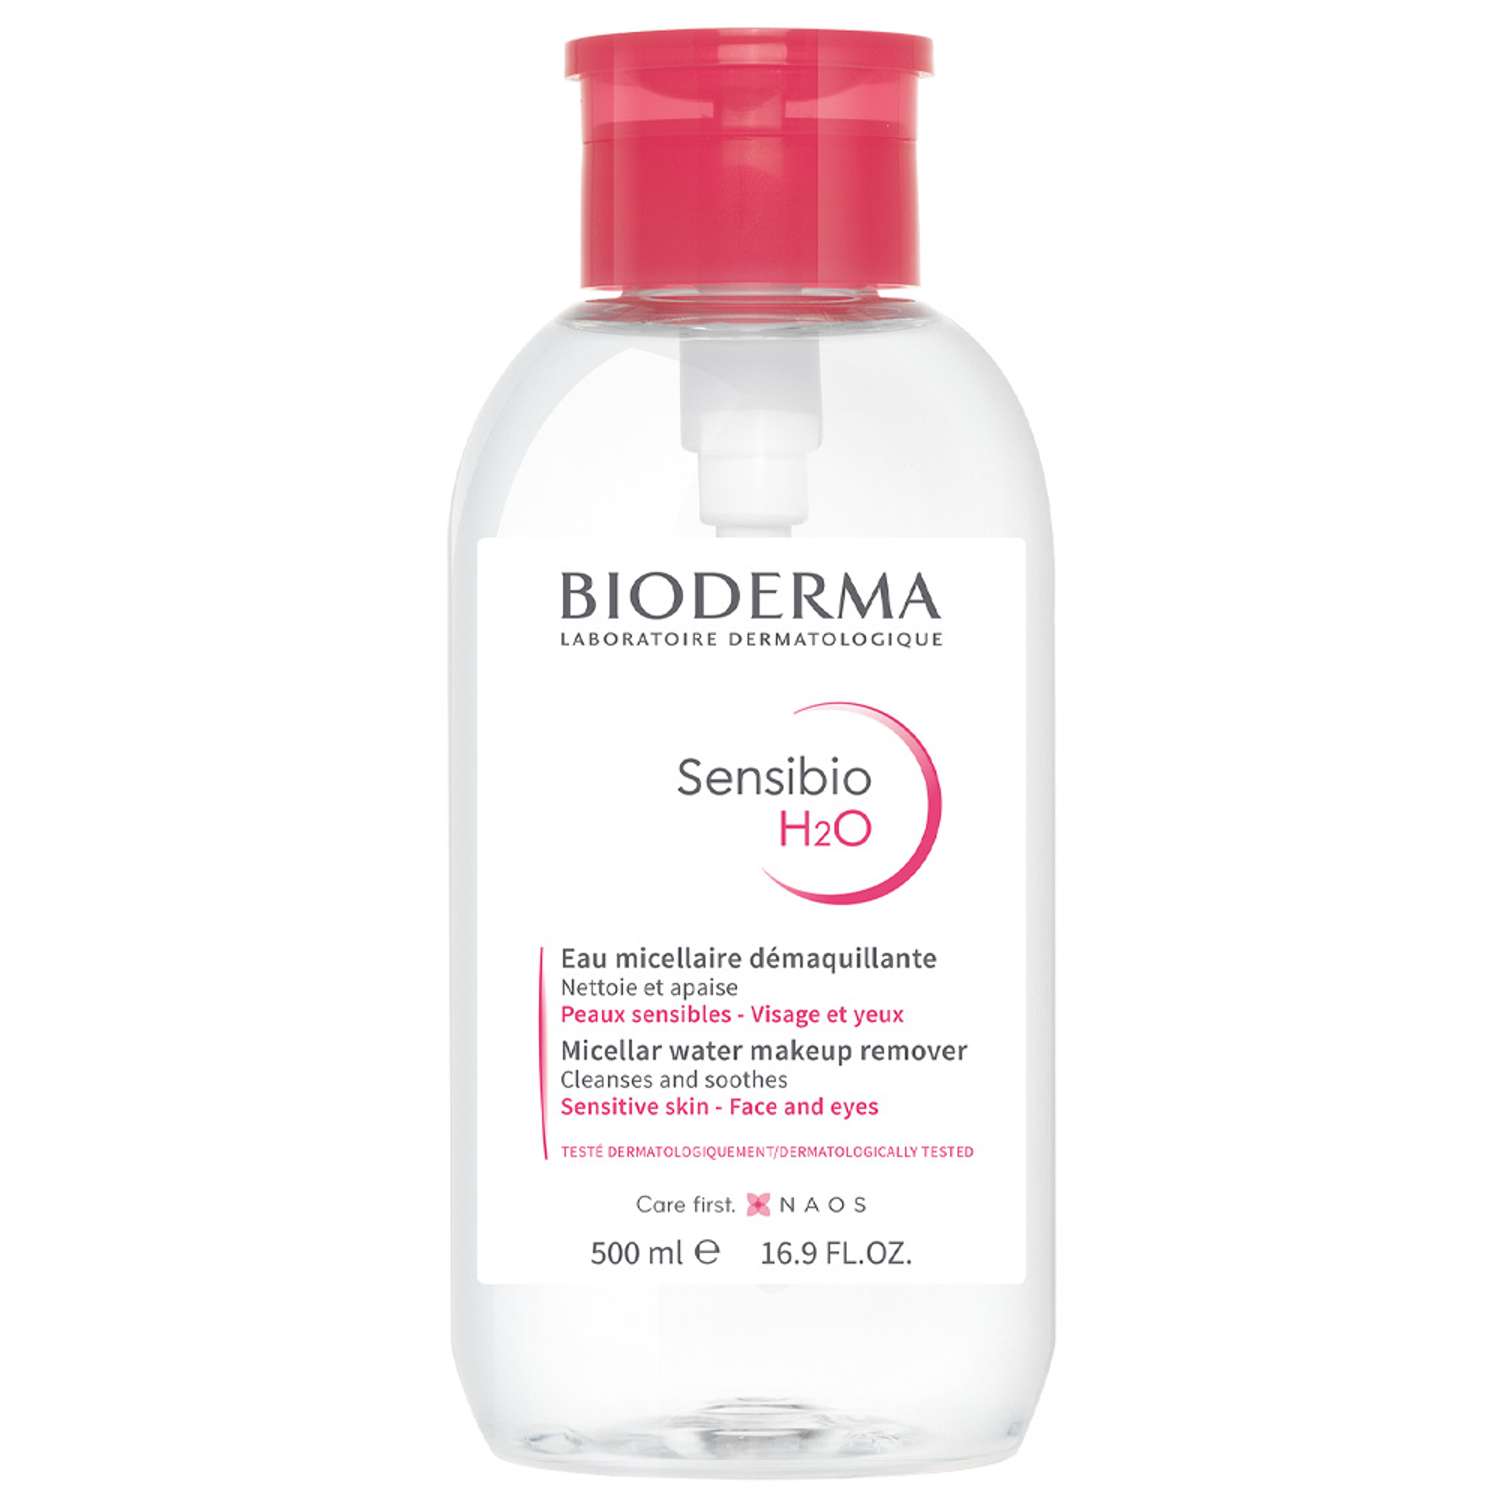 Мицеллярная вода H2O с помпой Bioderma Sensibio успокаивающая для нормальной и чувствительной кожи лица 500 мл - фото 1